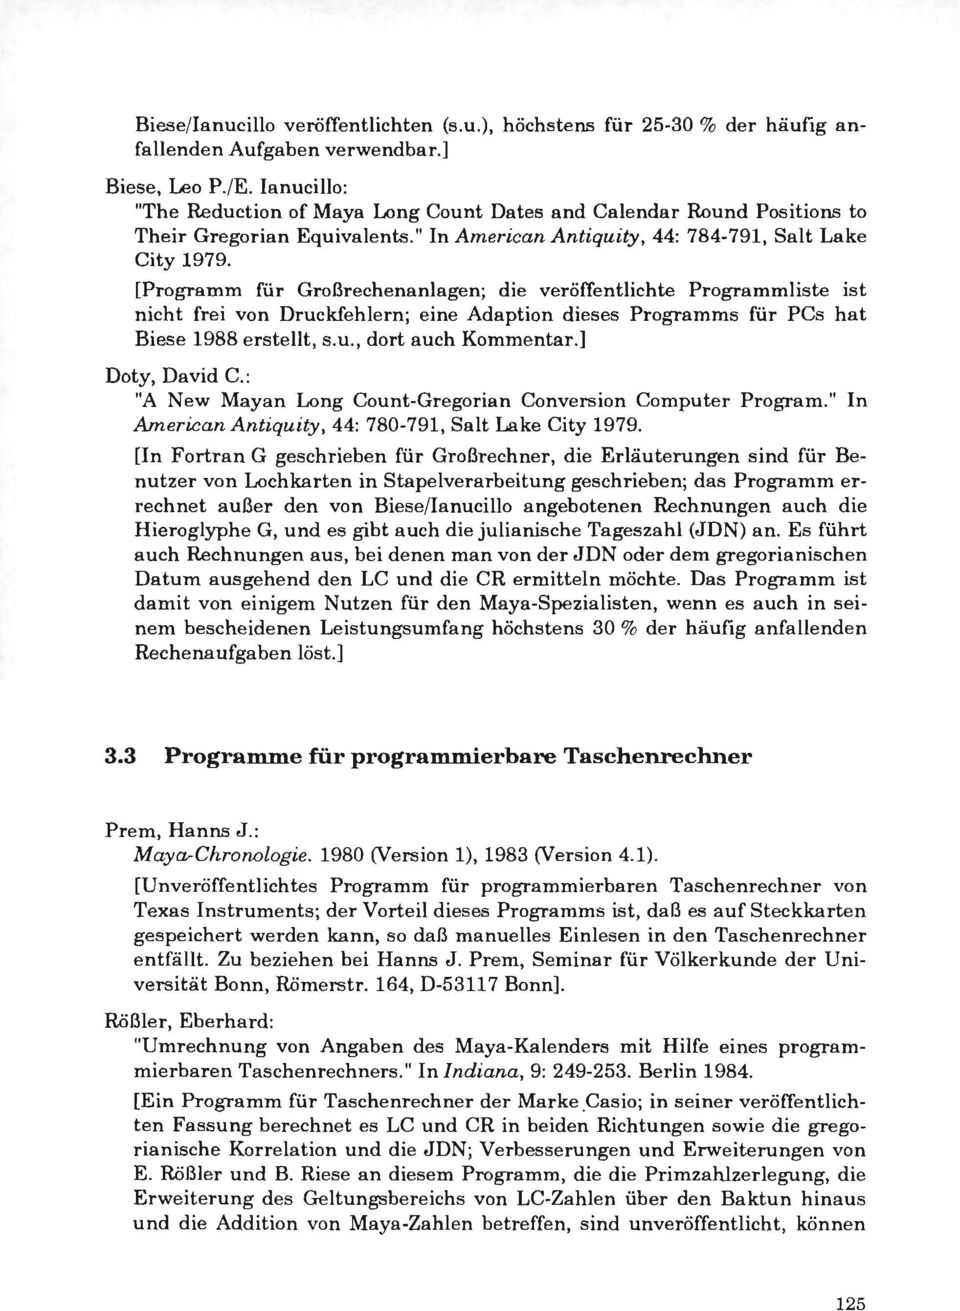 [Programm für Großrechenanlagen; die veröffentlichte Programmliste ist nicht frei von Druckfehlern; eine Adaption dieses Programms für PCs hat Biese 1988 erstellt, s.u., dort auch Kommentar.